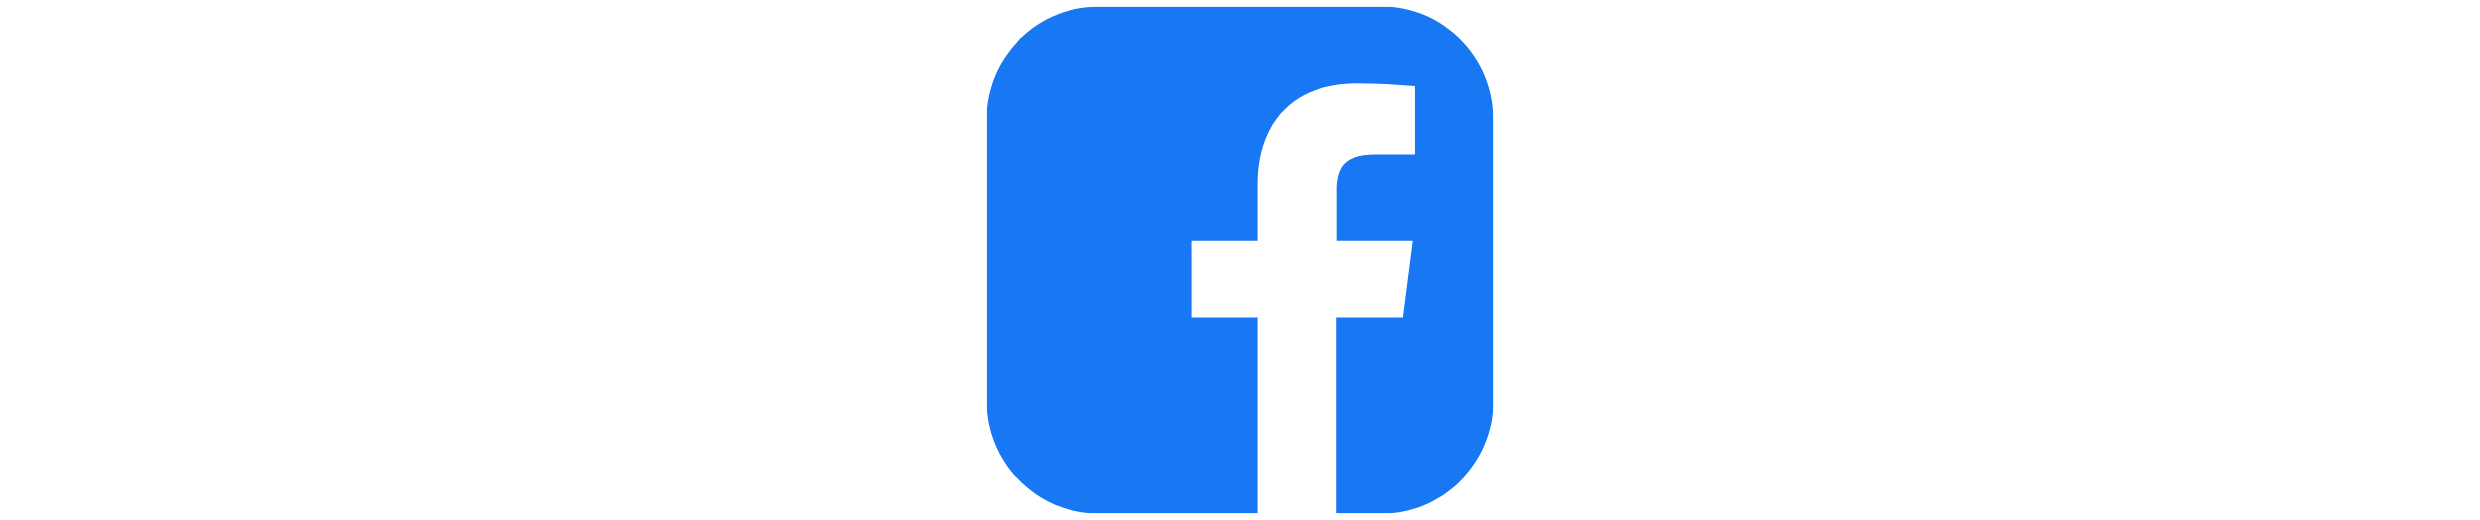 Facebook logo button